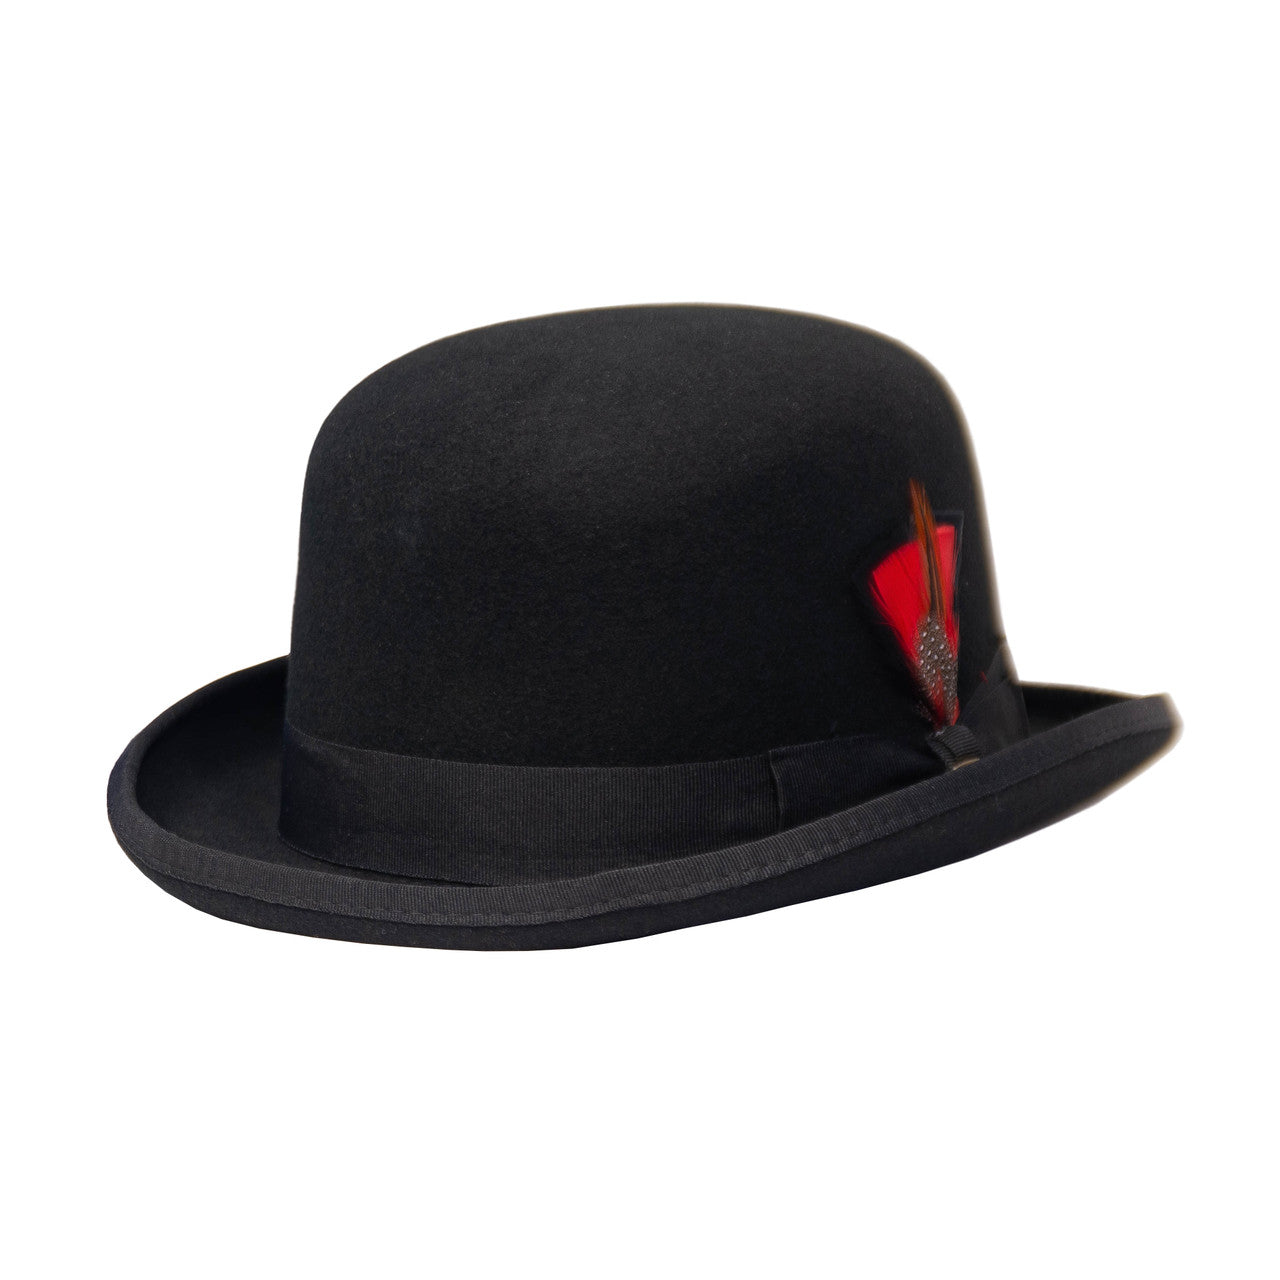 Saint Martin - "Preakness" Wool Felt Derby Hat (Profile)